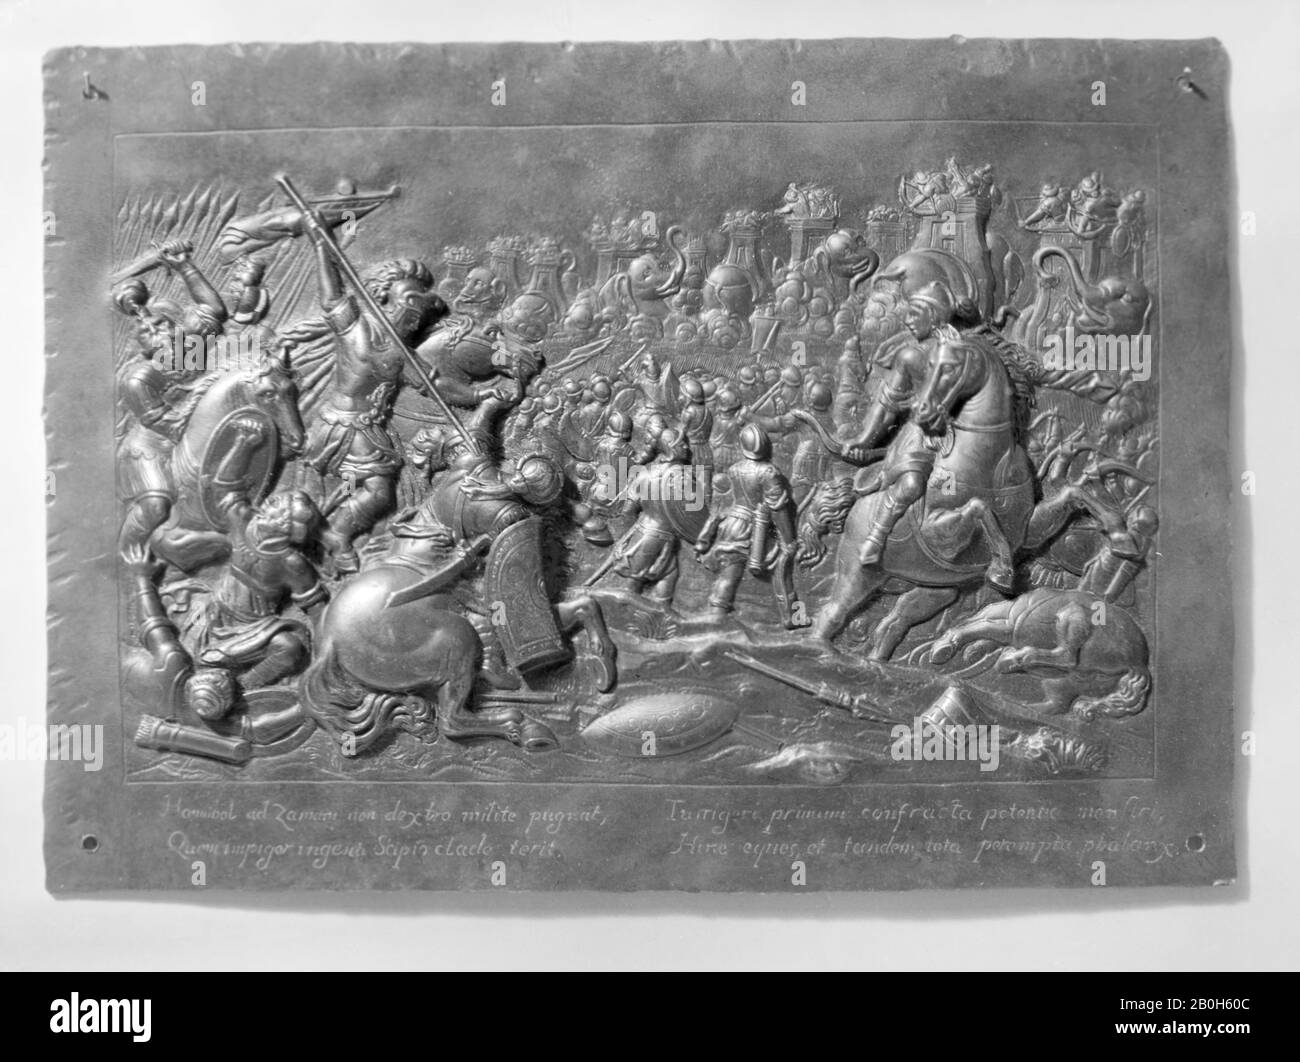 Szenen aus der Schlacht von Zama, möglicherweise Französisch, 17. Jahrhundert, möglicherweise Französisch, Eisen, 7 × 9 3/4 Zoll. (17,8 × 24,8 cm), Medaillen und Plaketten Stockfoto